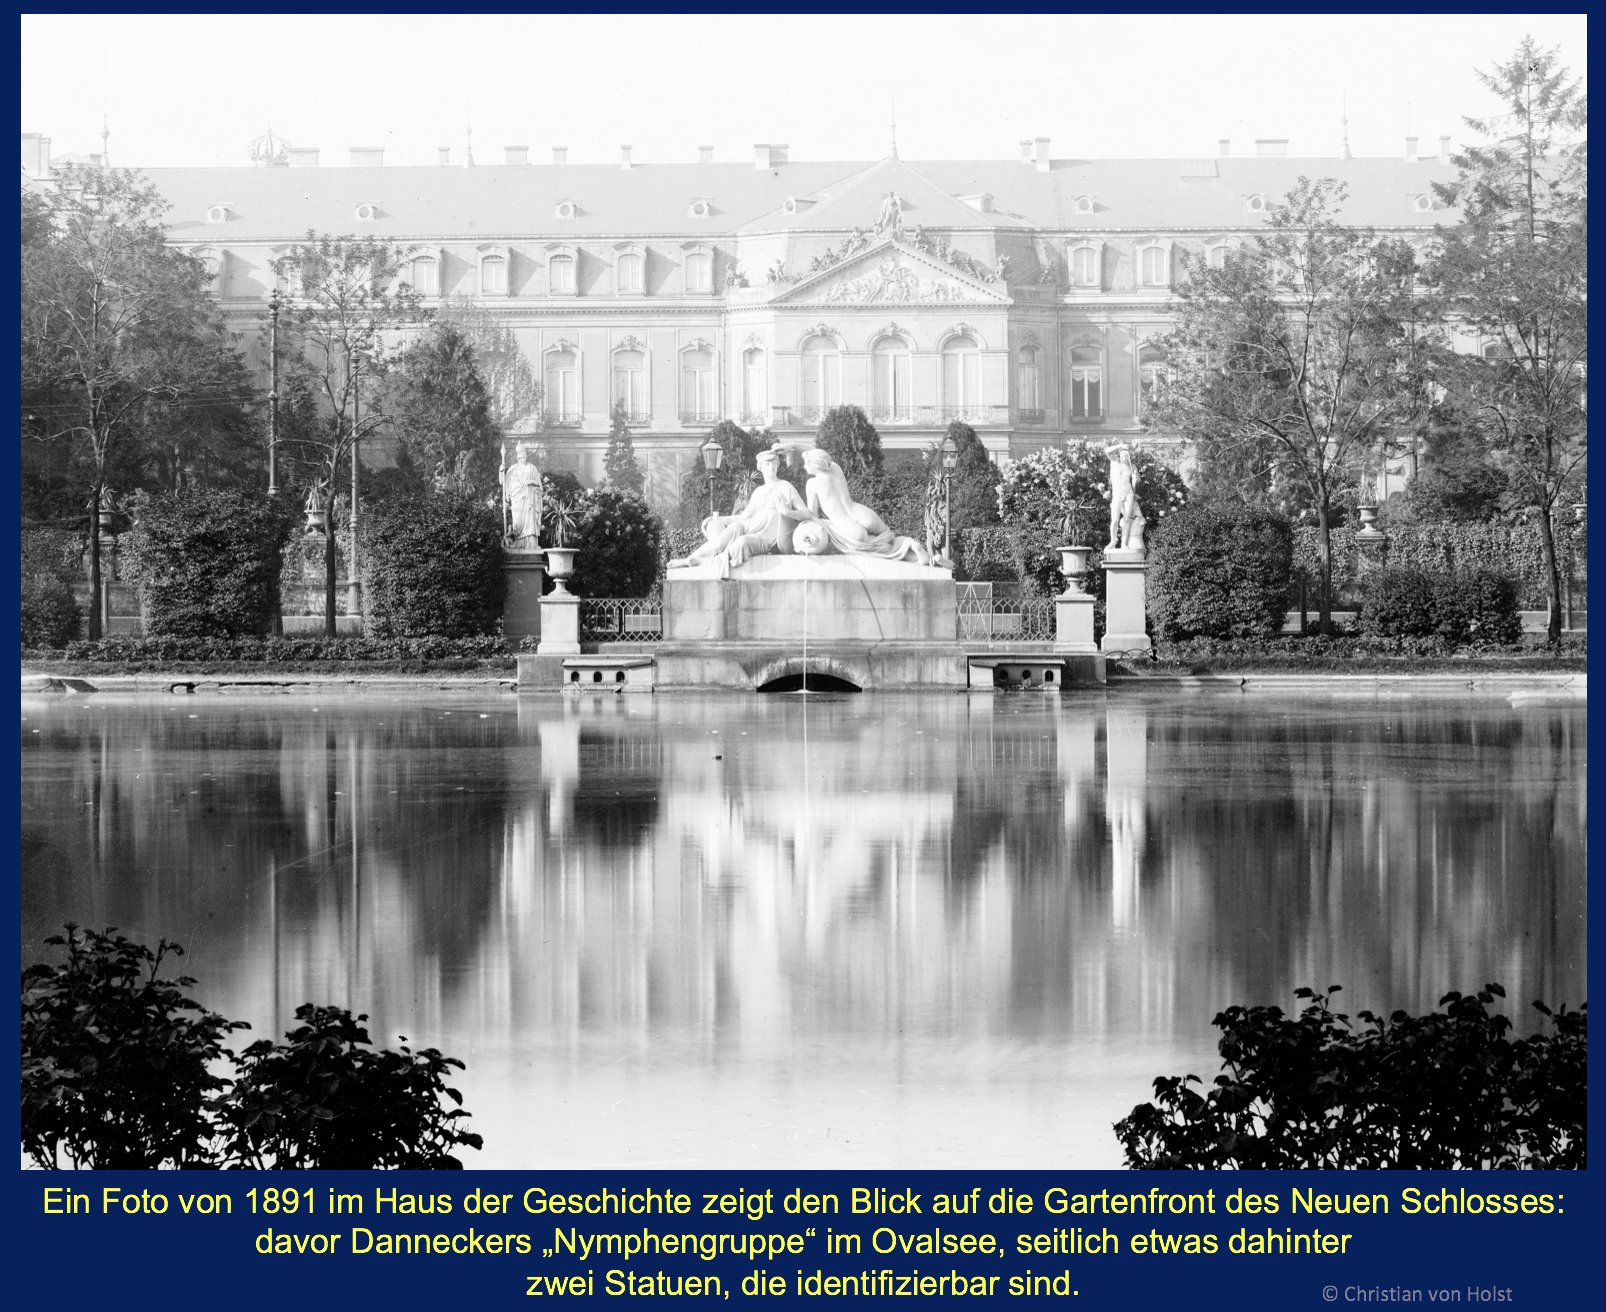 Weitere Verluste bei Schönheiten im Schlossgarten – Ovalsee und Gartenfront des Neuen Schlosses mit sämtlich verlorenen Skulpturen 1891